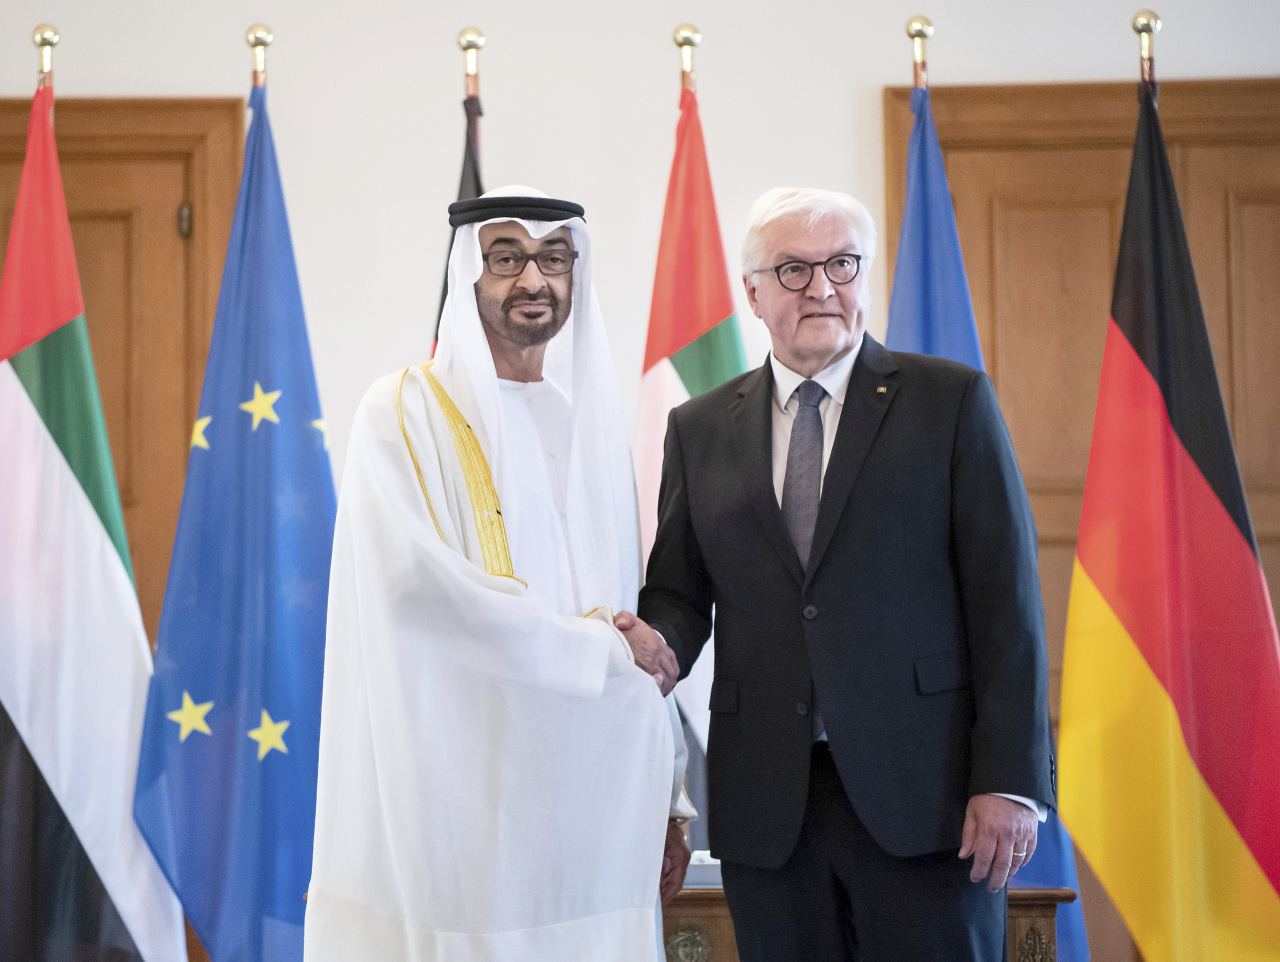 Nemecký prezident Frank-Walter Steinmeier a korunný princ Spojených arabských emirátov šejk Muhammad ibn Zajd Nahaján